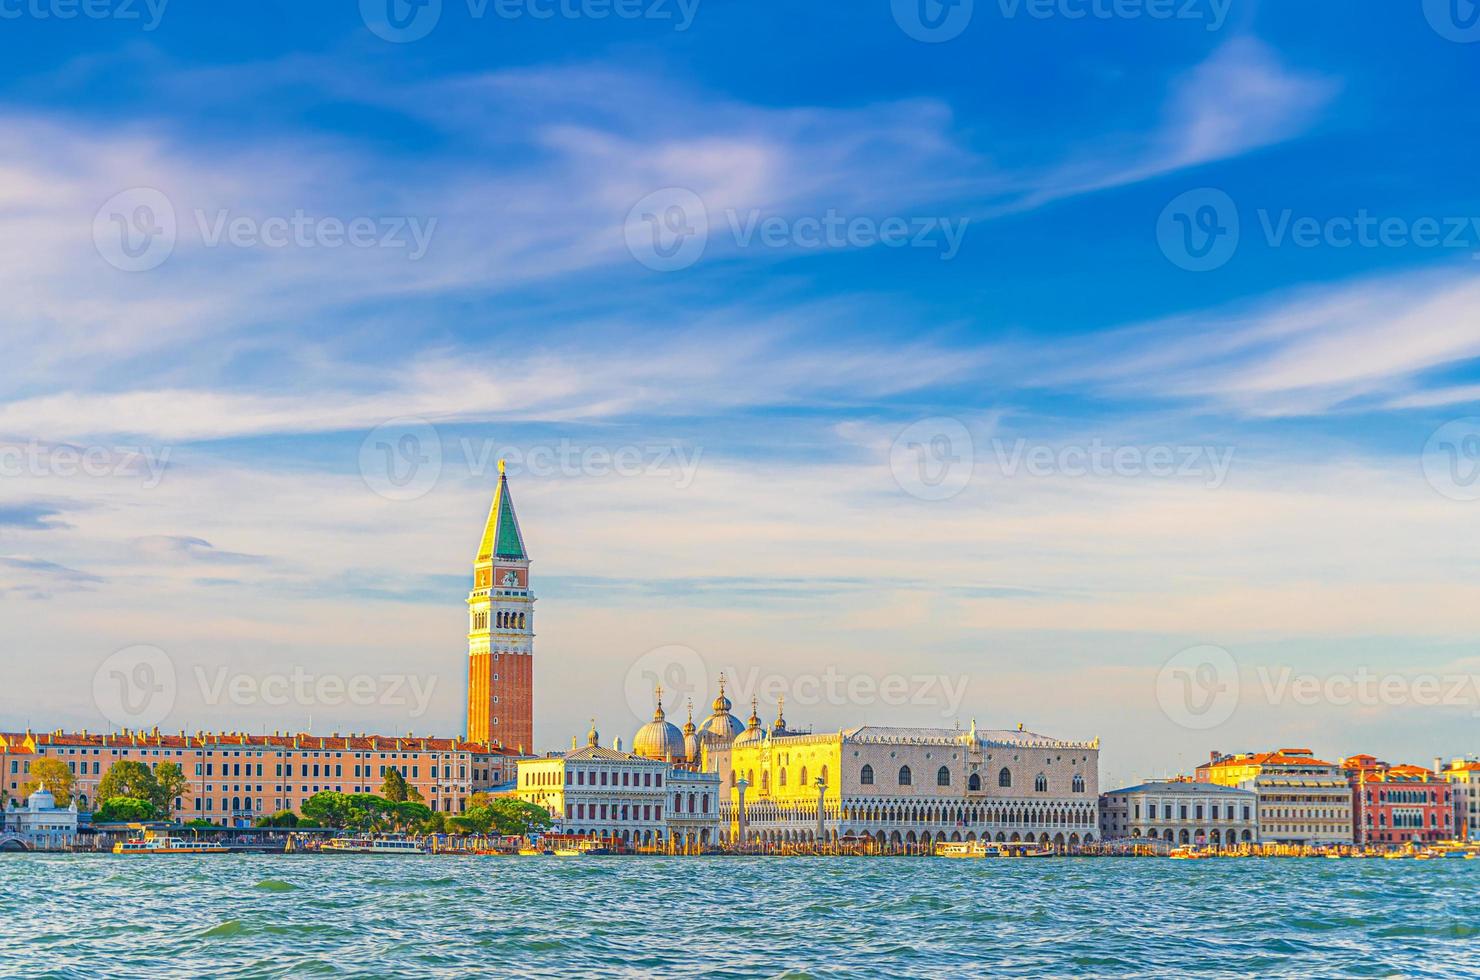 paesaggio urbano di venezia con bacino di san marco della laguna veneta foto